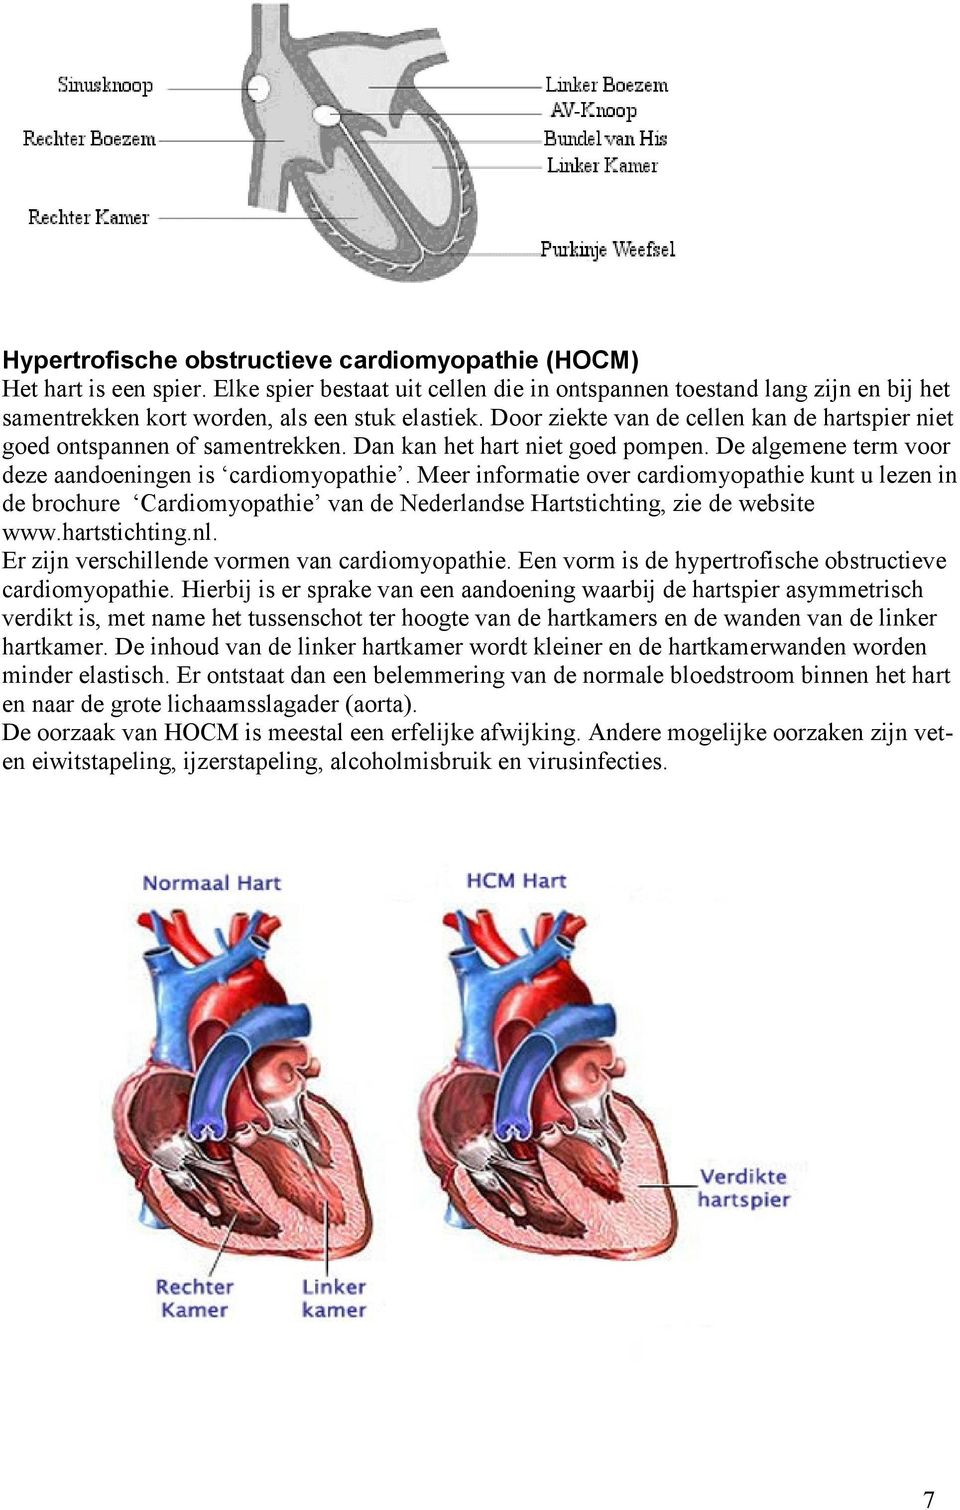 Meer informatie over cardiomyopathie kunt u lezen in de brochure Cardiomyopathie van de Nederlandse Hartstichting, zie de website www.hartstichting.nl.